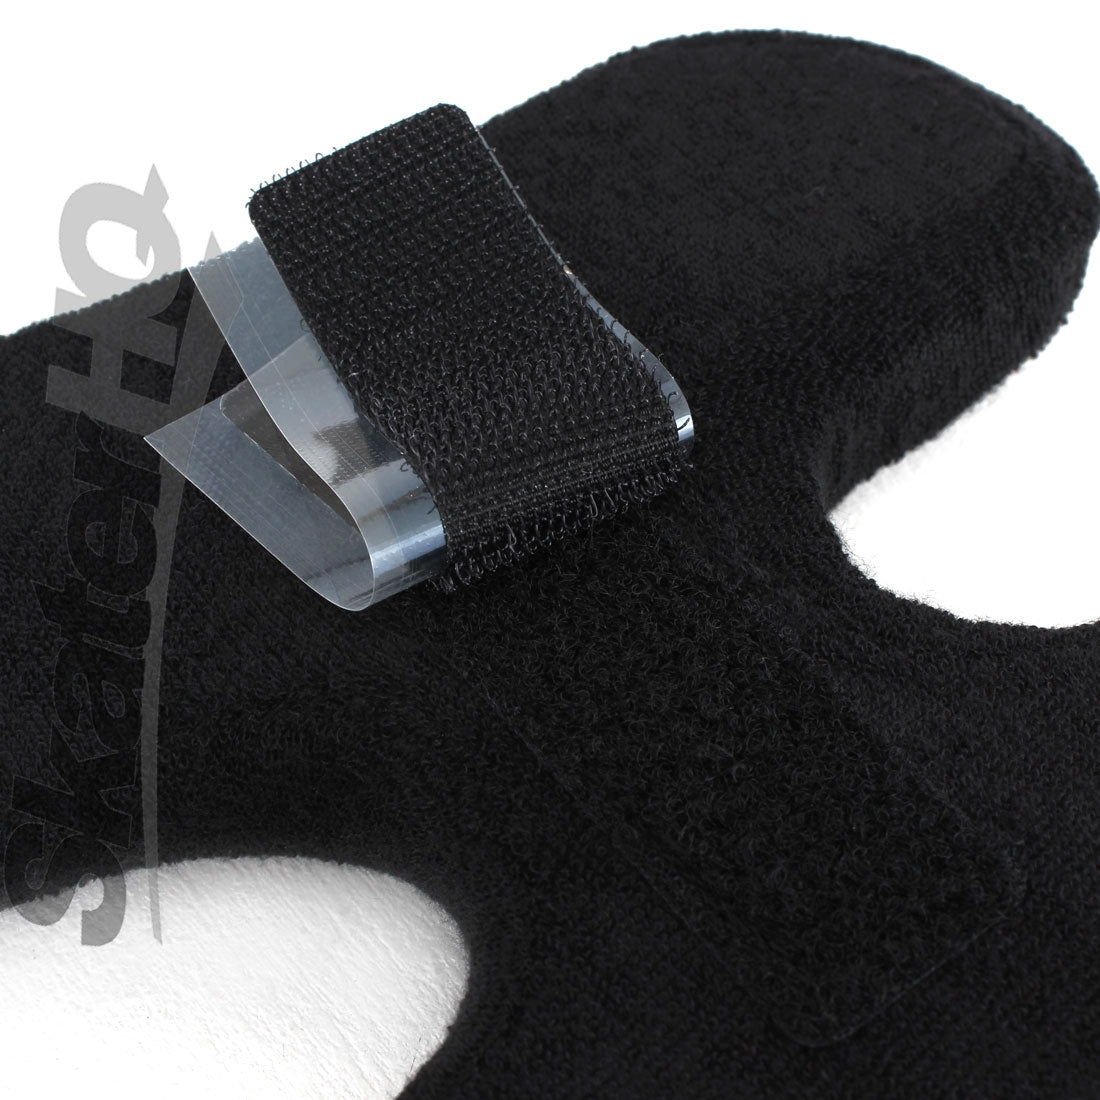 Triple 8 Sweatsaver Liner Black - Large Helmet liners